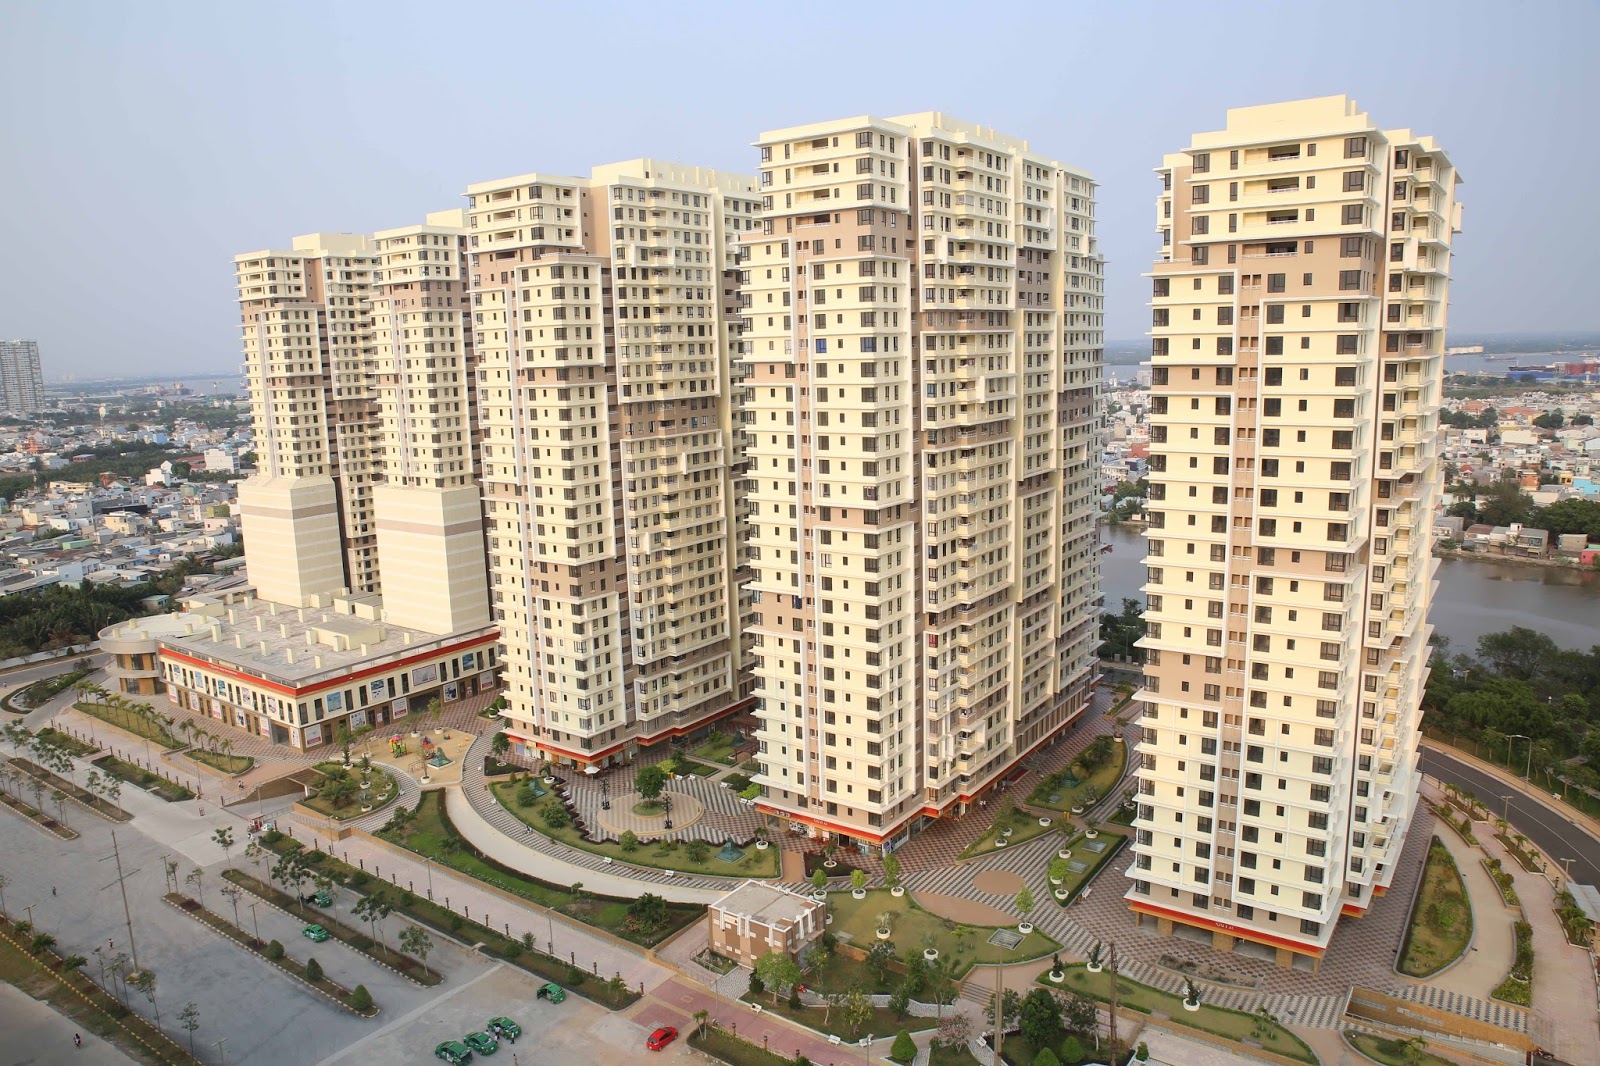 Giá căn hộ chung cư tại Hà Nội và TP.HCM đều tăng do khan hiếm nguồn cung, dự án mới được mở bán. Ảnh minh họa.